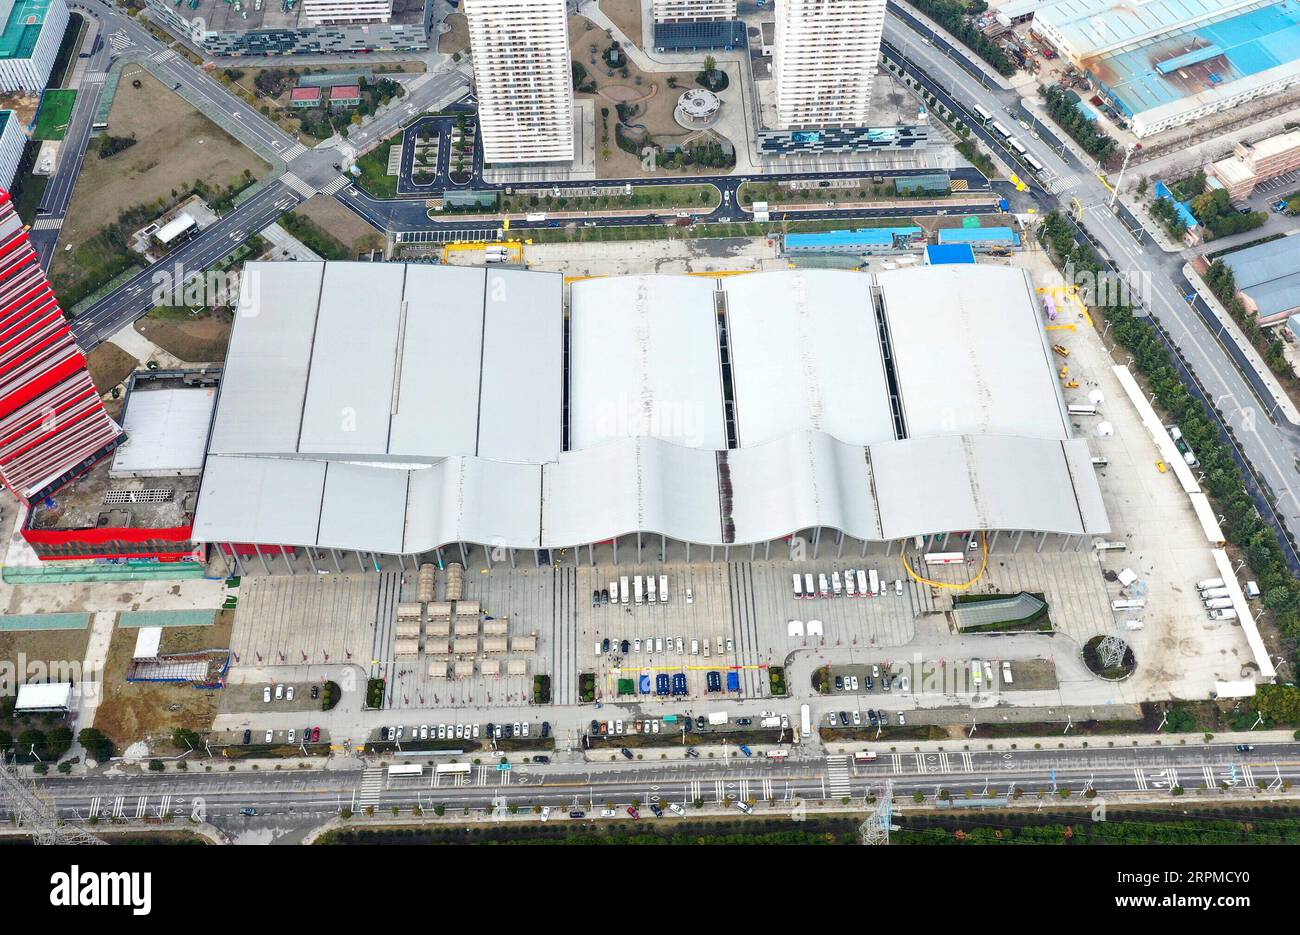 200208 -- WUHAN, 8 febbraio 2020 -- foto aerea scattata l'8 febbraio 2020 mostra una vista di Wuhan Livingroom a Wuhan, nella provincia di Hubei della Cina centrale. Il complesso di edifici culturali chiamato Wuhan Livingroom, che è convertito in un ospedale per ricevere pazienti infettati dal nuovo coronavirus, è progettato per ospitare 2.000 letti. L'unità infermieristica B dell'ospedale è pronta, mentre l'unità A è stata messa in uso in precedenza. CHINA-HUBEI-WUHAN-CORONAVIRUS-IMPROVVISATO OSPEDALE-READY CN LIXHE PUBLICATIONXNOTXINXCHN Foto Stock